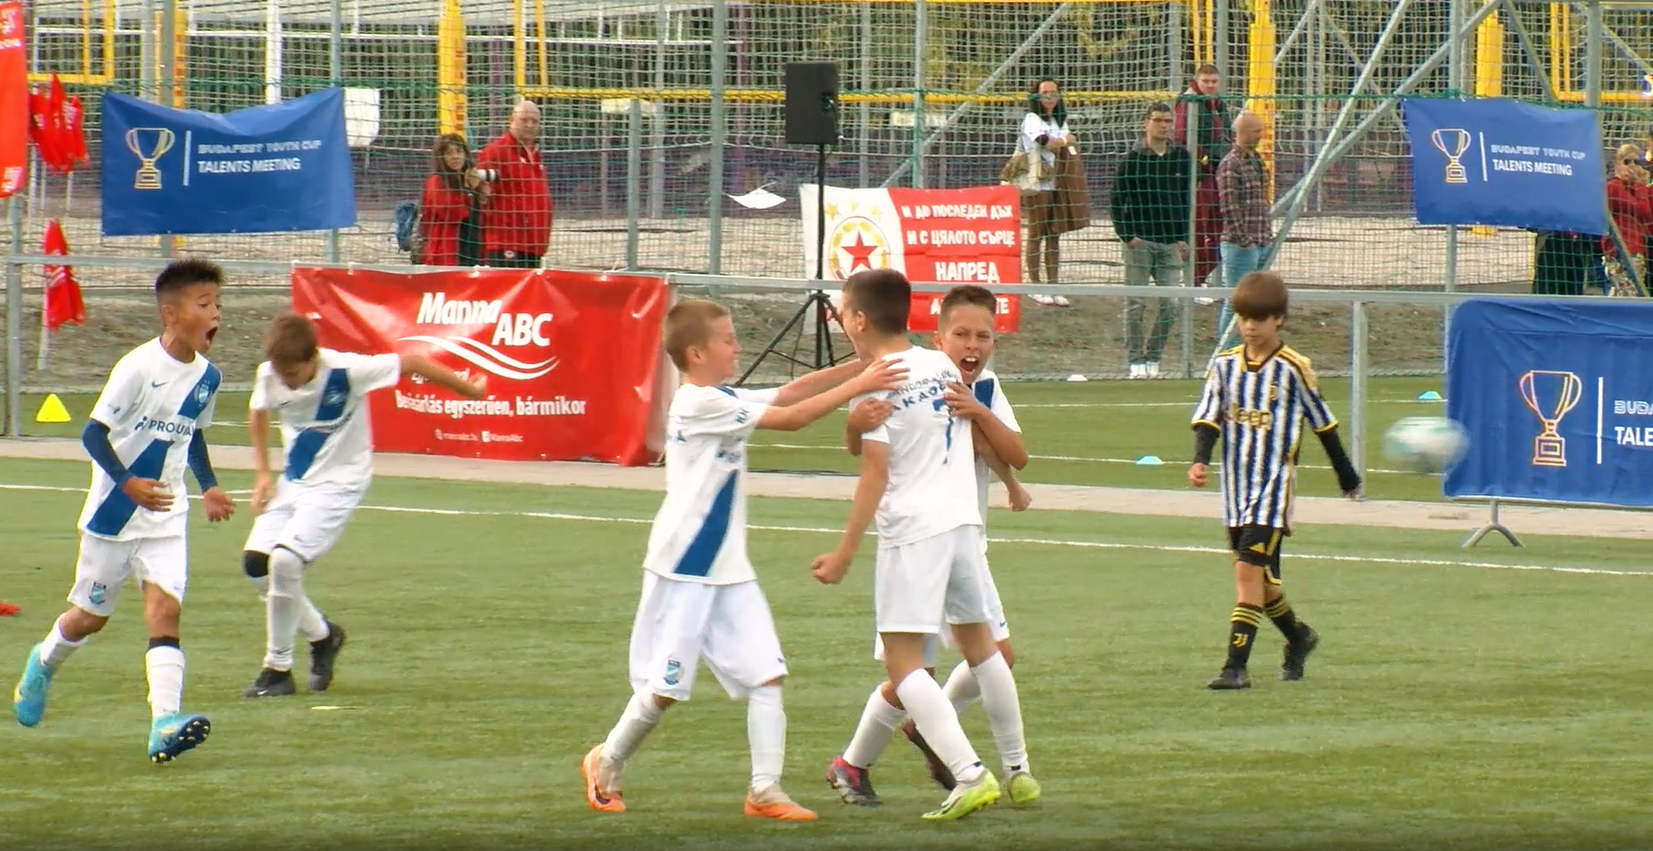 Riport a Budapest Youth Cupon sikeres szereplő U12-es csapatunkról (videó)